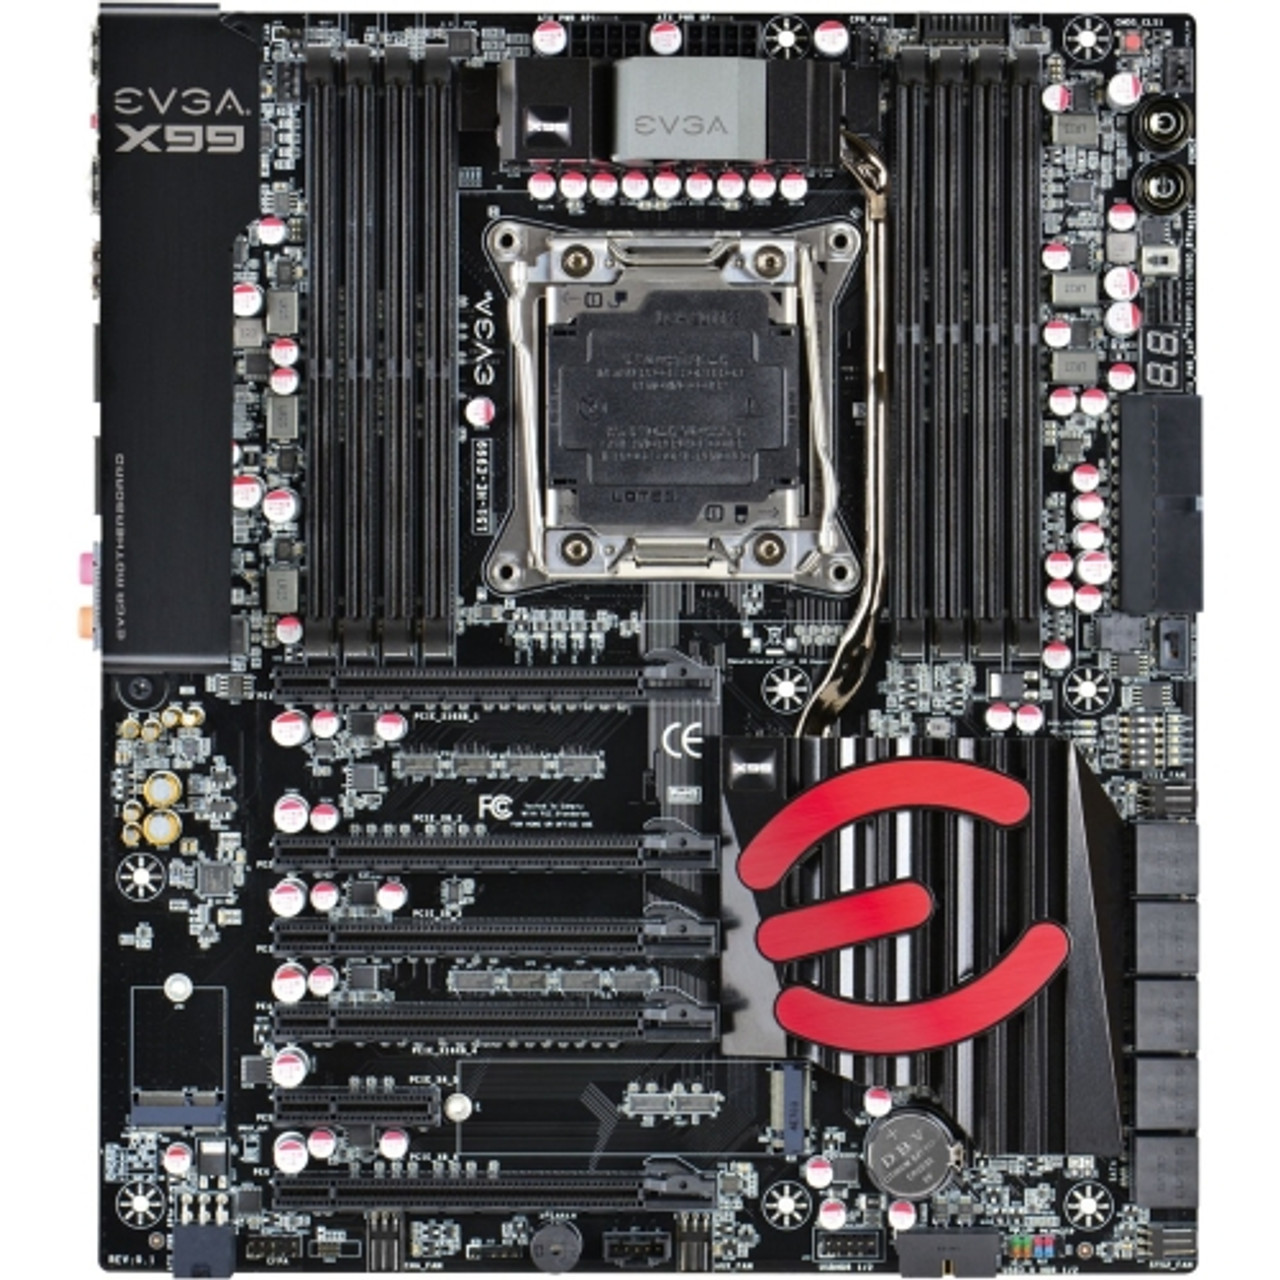 151-HE-E999-KR EVGA X99 Classified Desktop Motherboard Intel X99 Chipset Socket LGA 2011-v3 (Refurbished)